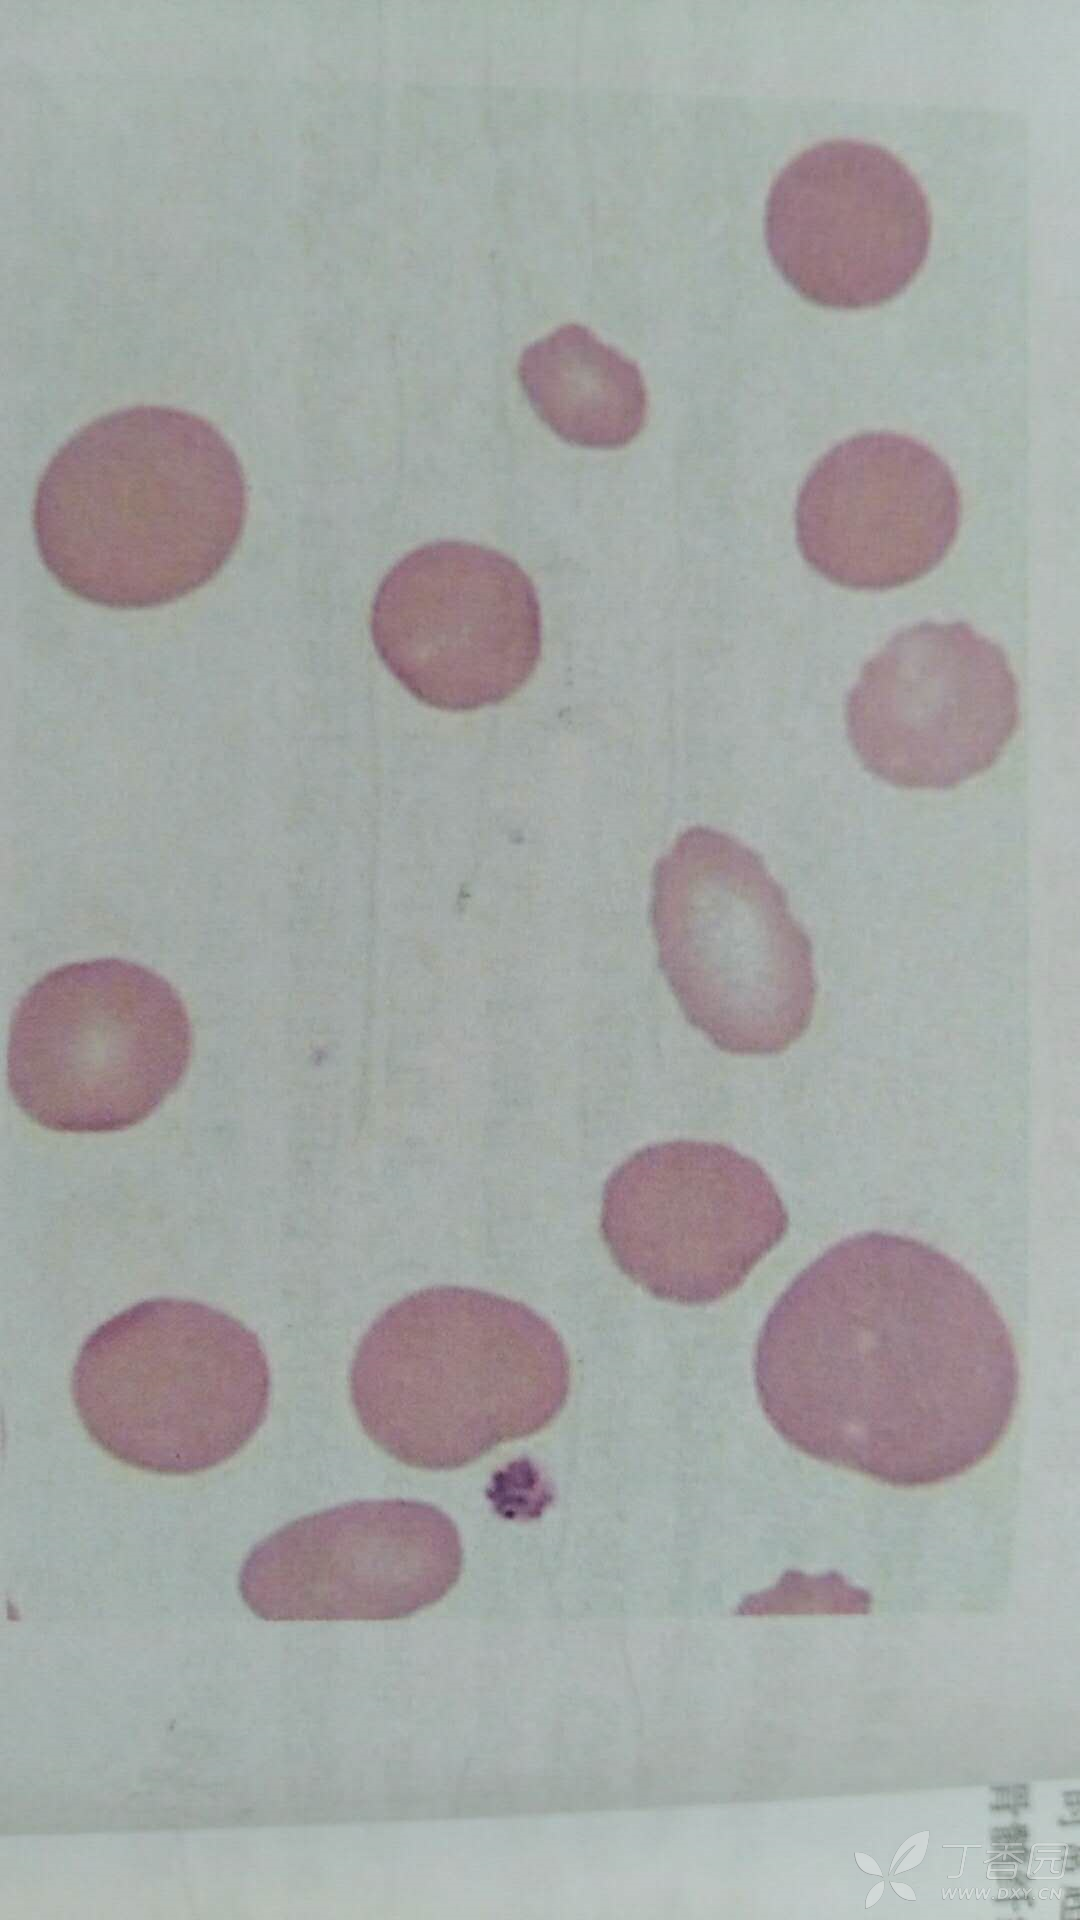 遗传性中,红细胞膜缺陷的有: 遗传性球形红细胞增多症